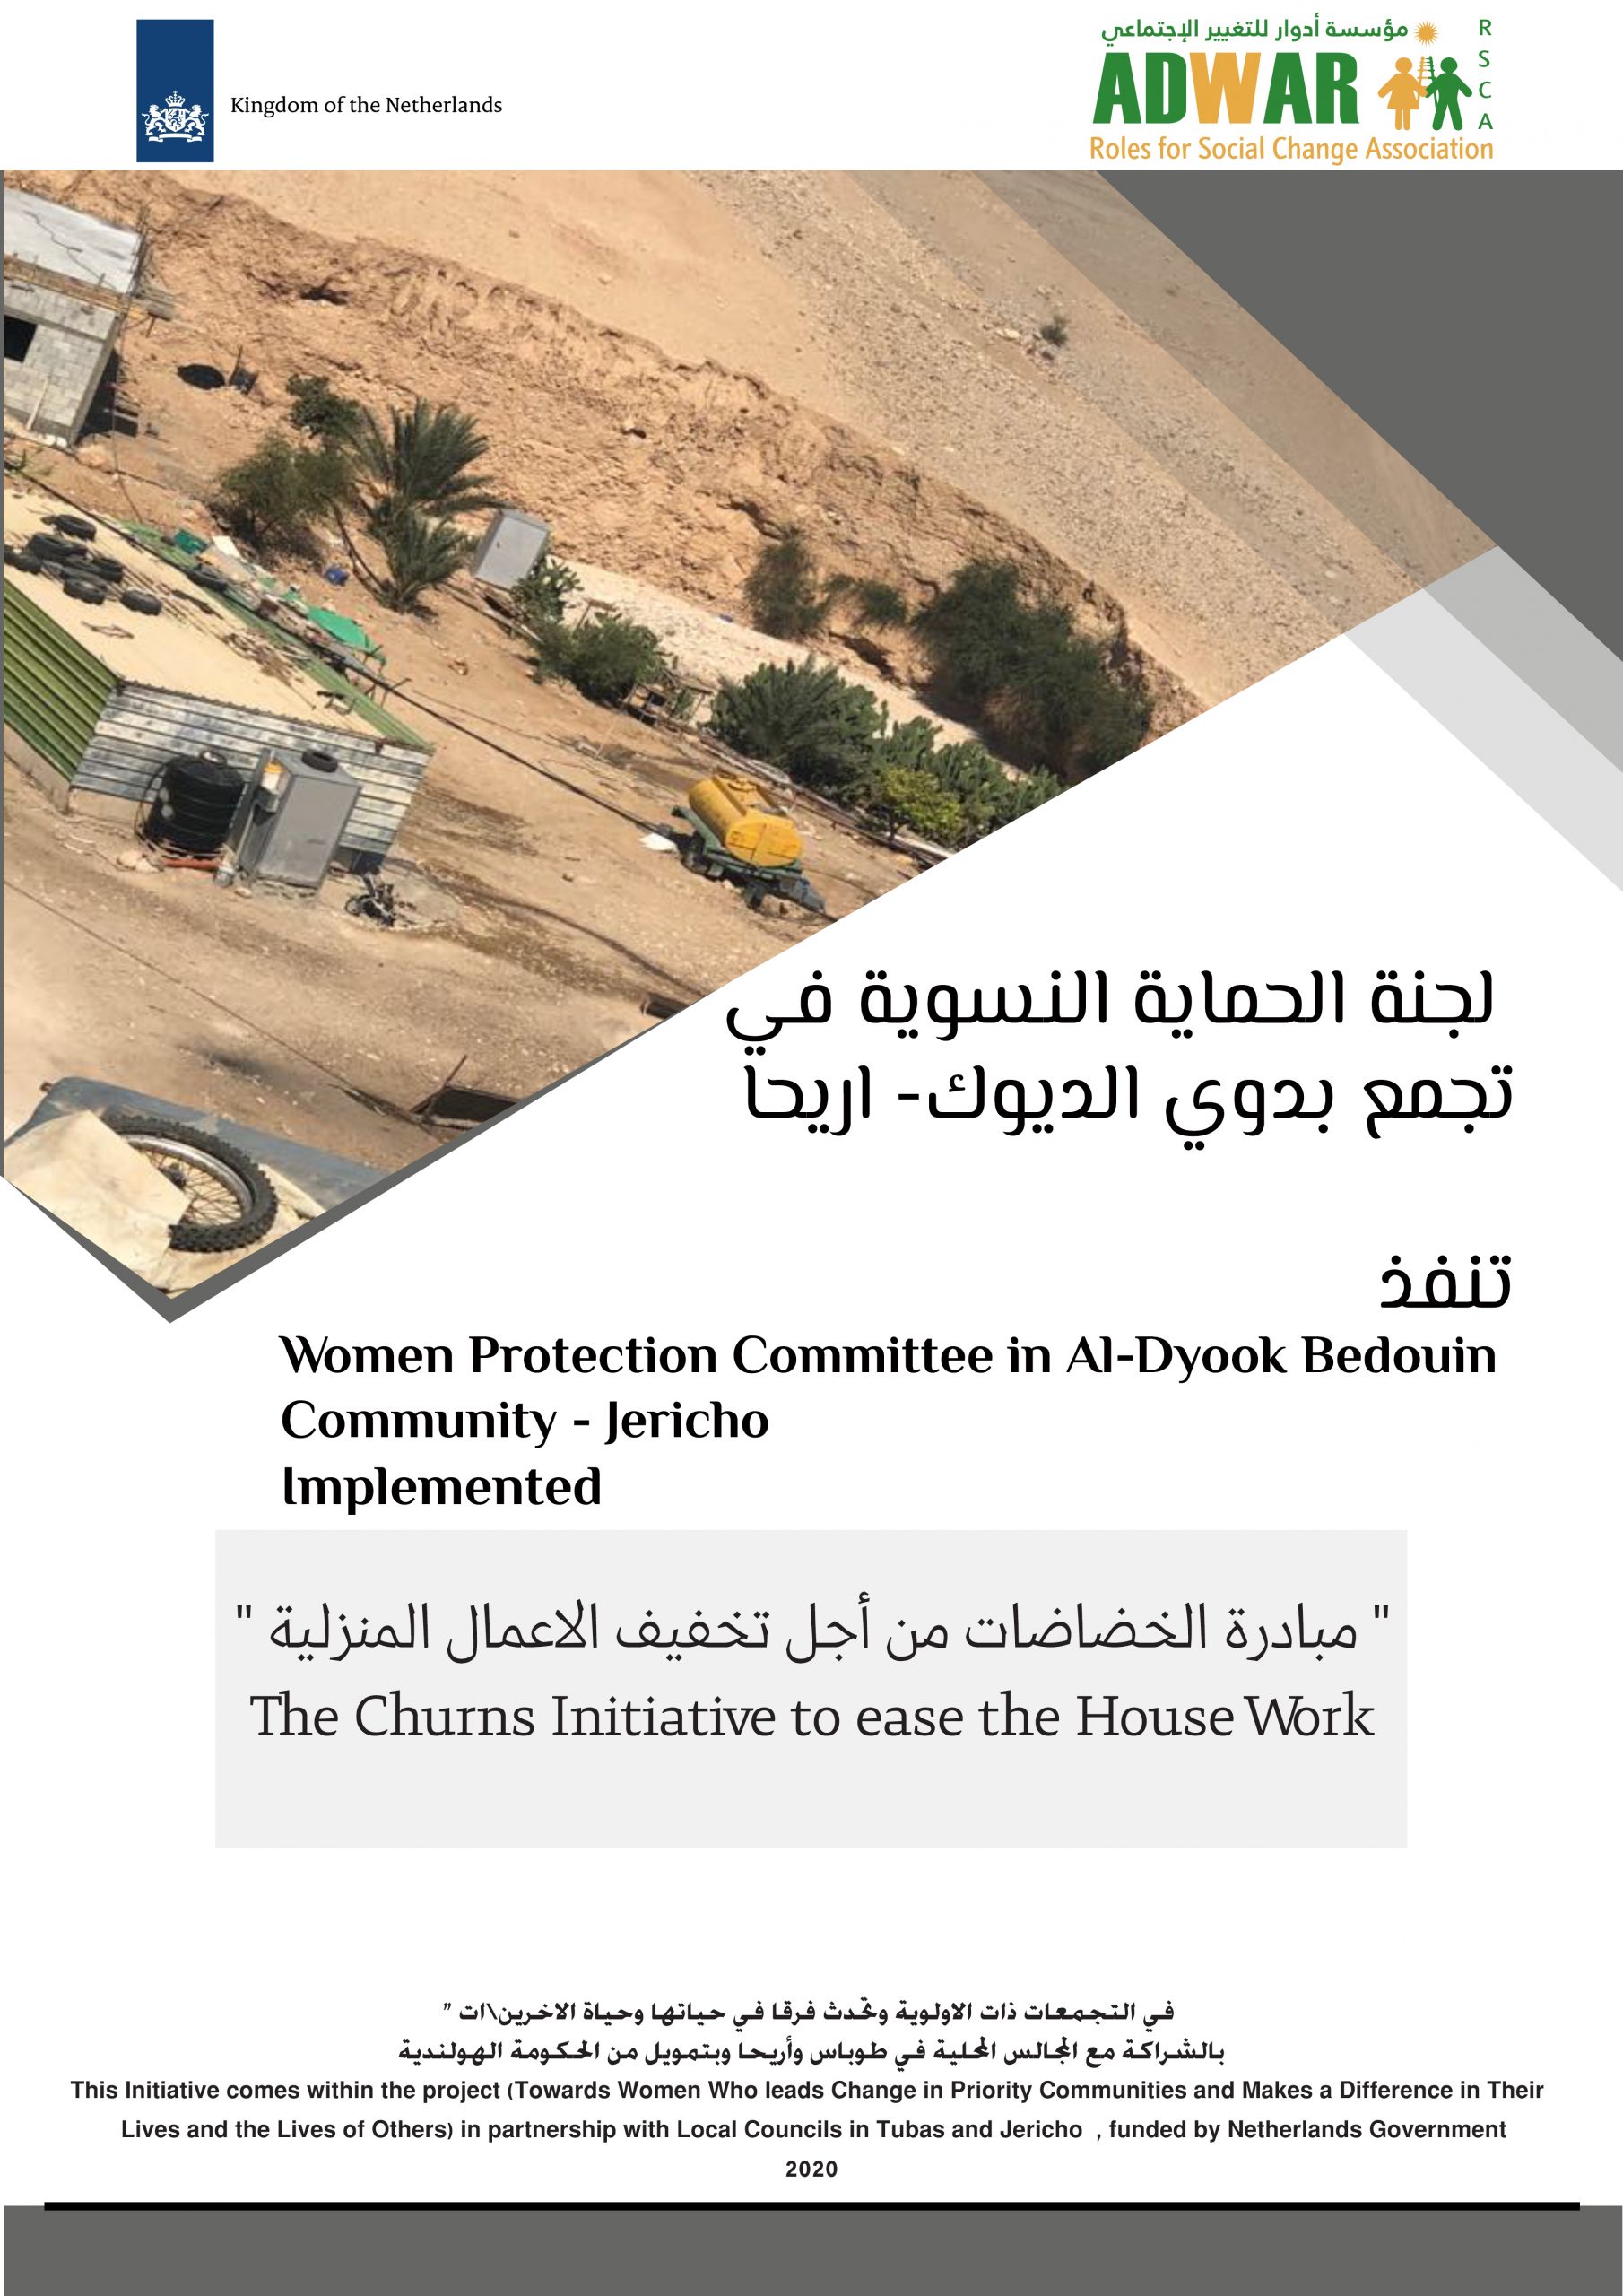  لجنة الحماية النسوية في تجمع بدوي الديوك ـ اريحا